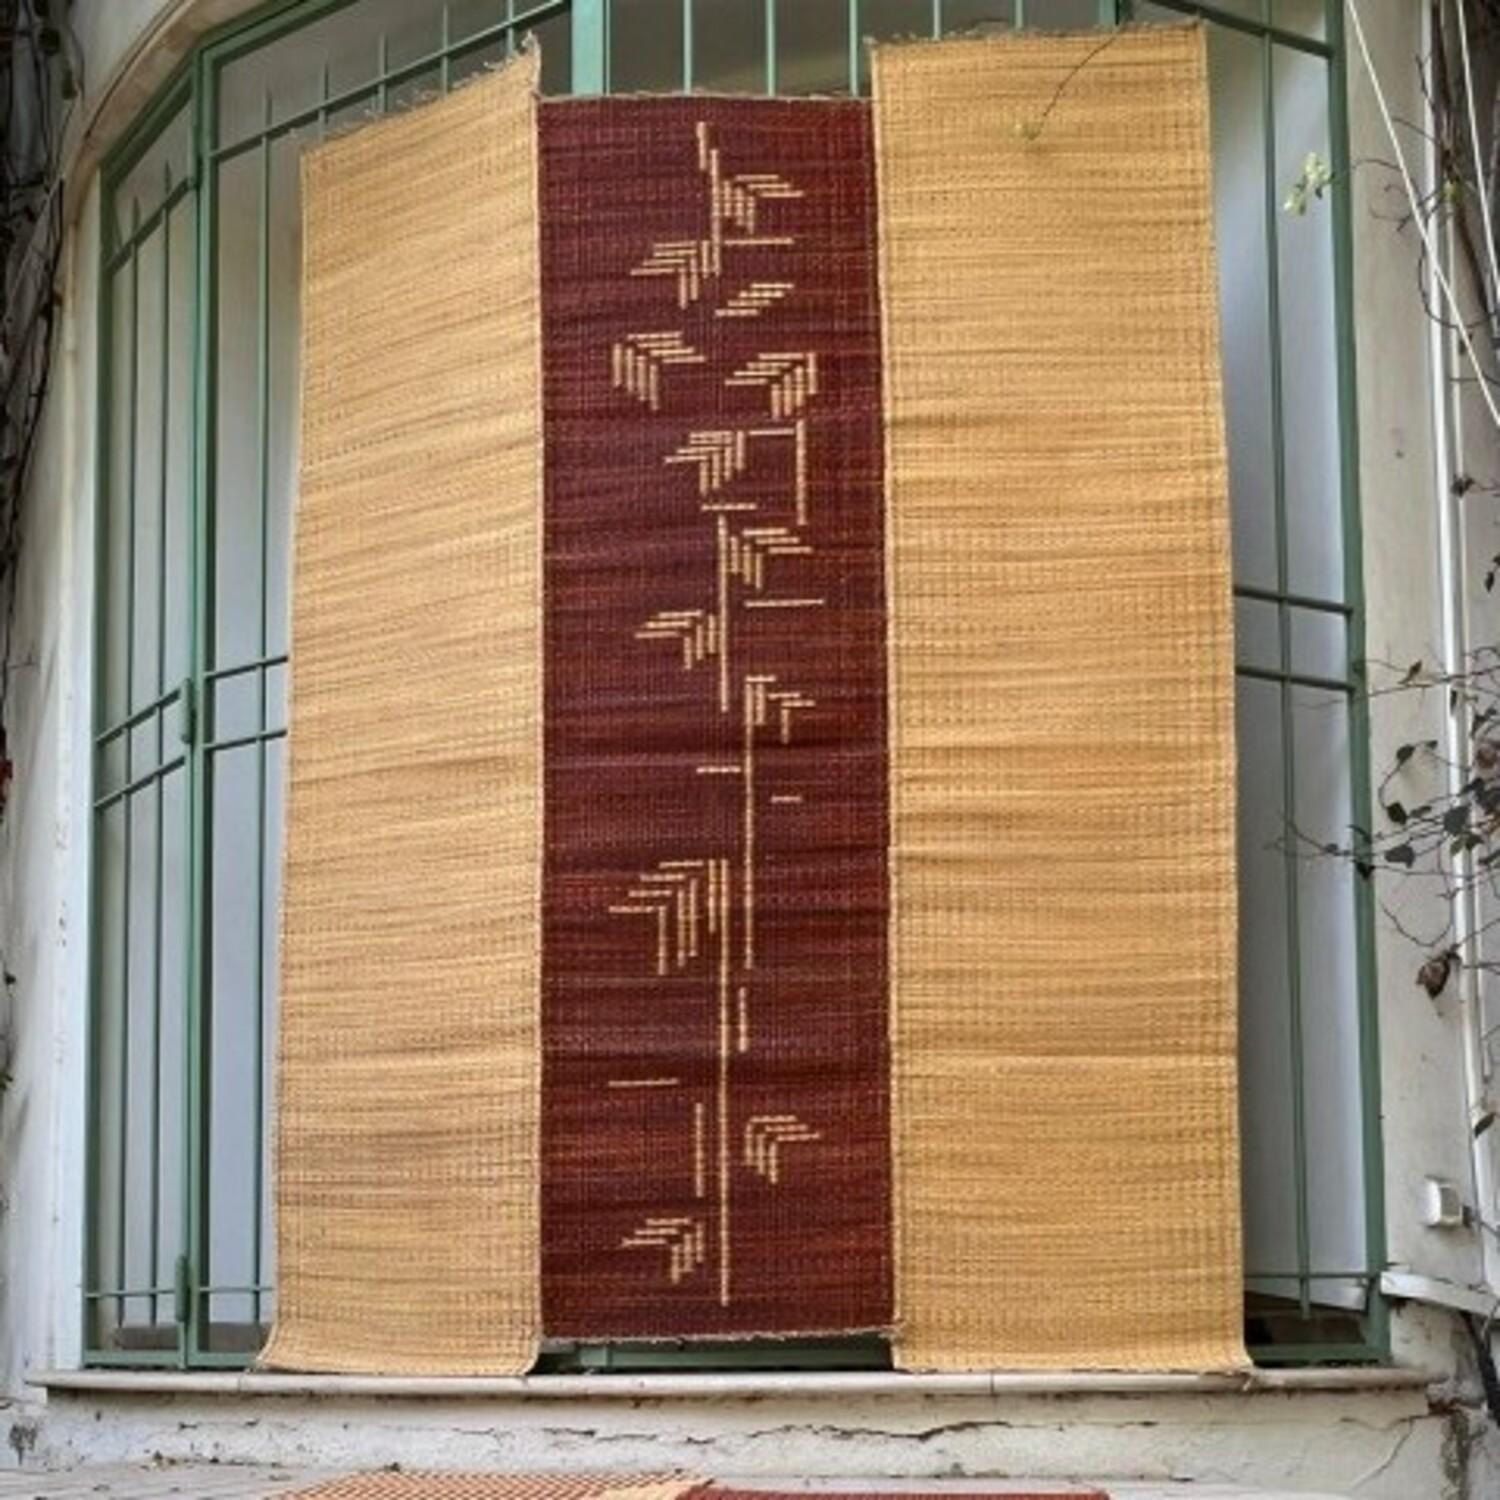 Tunisian Rug in Natural Fibre 6'x8' for Sophisticated Home Decor La Fibre Artisanale For Sale